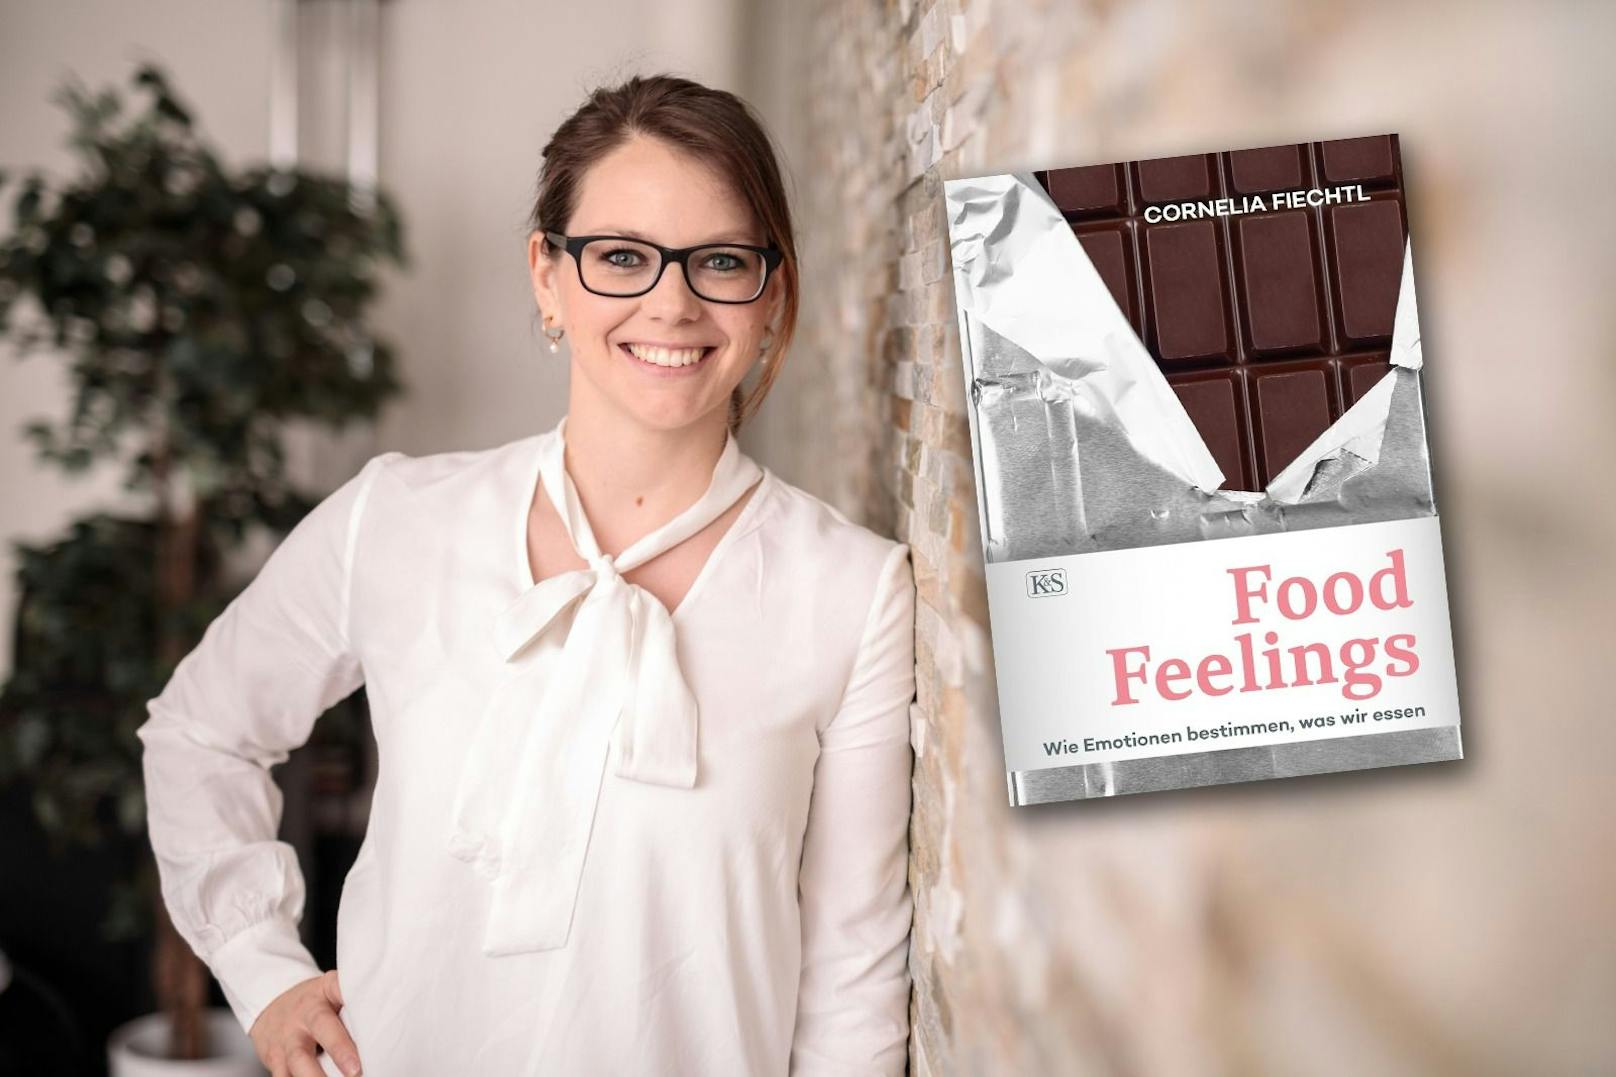 Cornelia Fiechtl weiß: "Manchmal fühlen wir uns Schokolade."